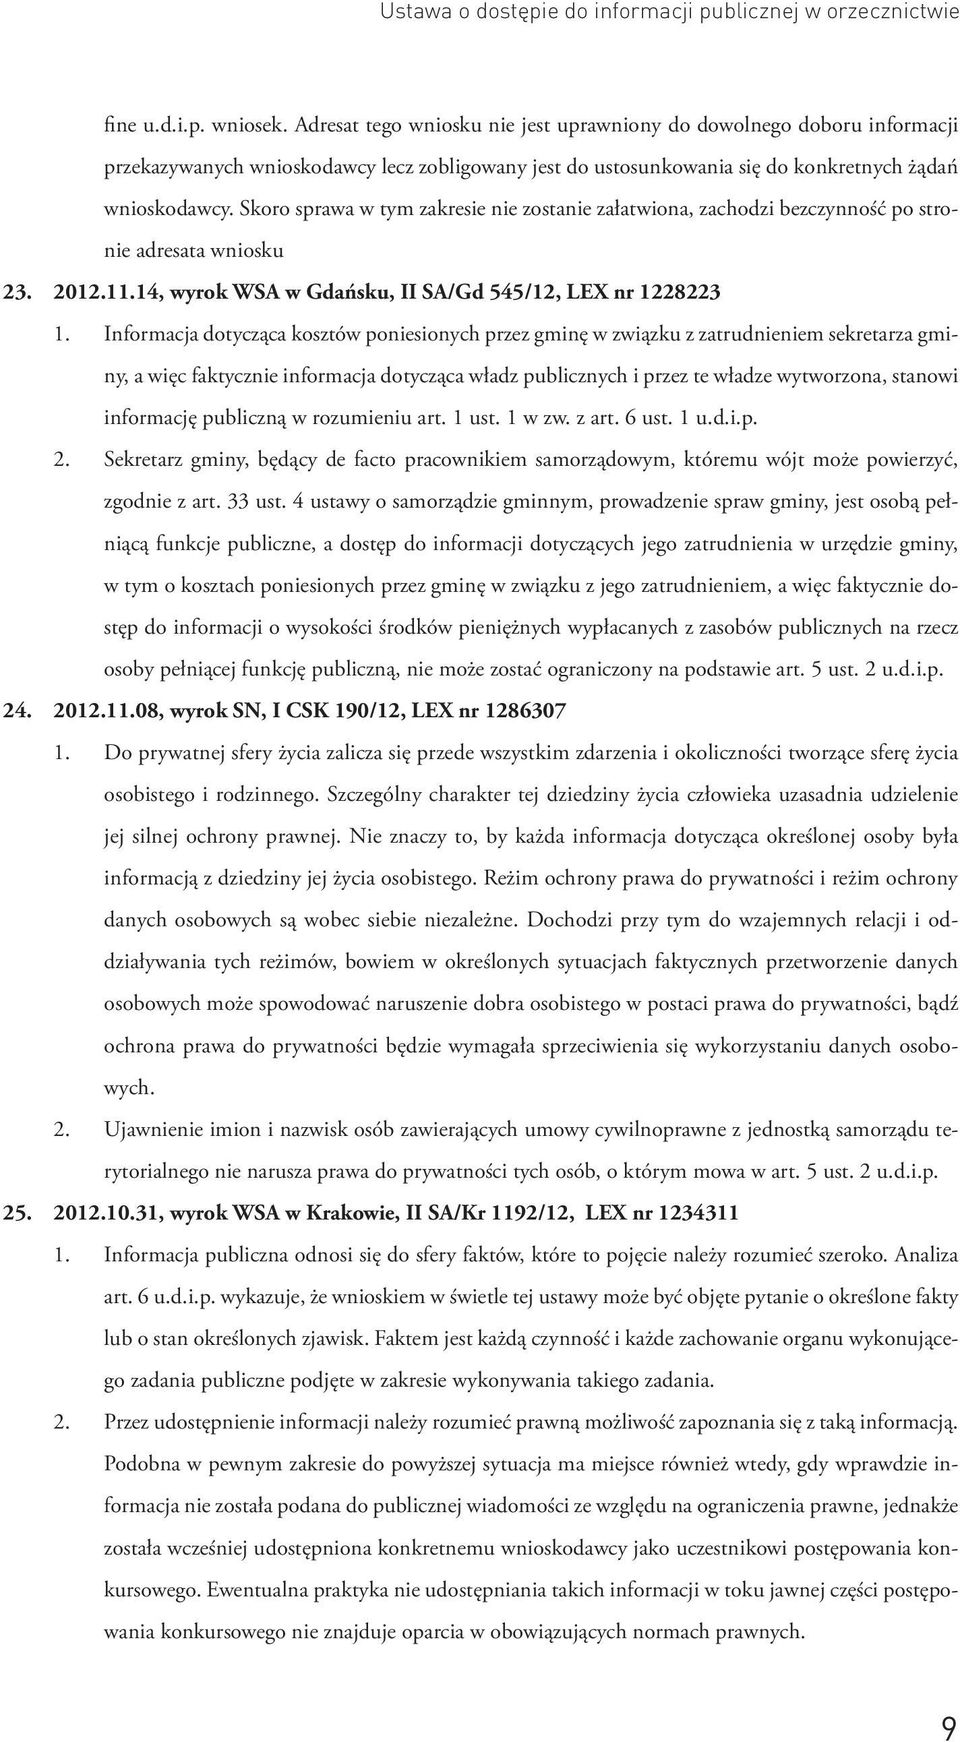 Skoro sprawa w tym zakresie nie zostanie załatwiona, zachodzi bezczynność po stronie adresata wniosku 23. 2012.11.14, wyrok WSA w Gdańsku, II SA/Gd 545/12, LEX nr 1228223 1.